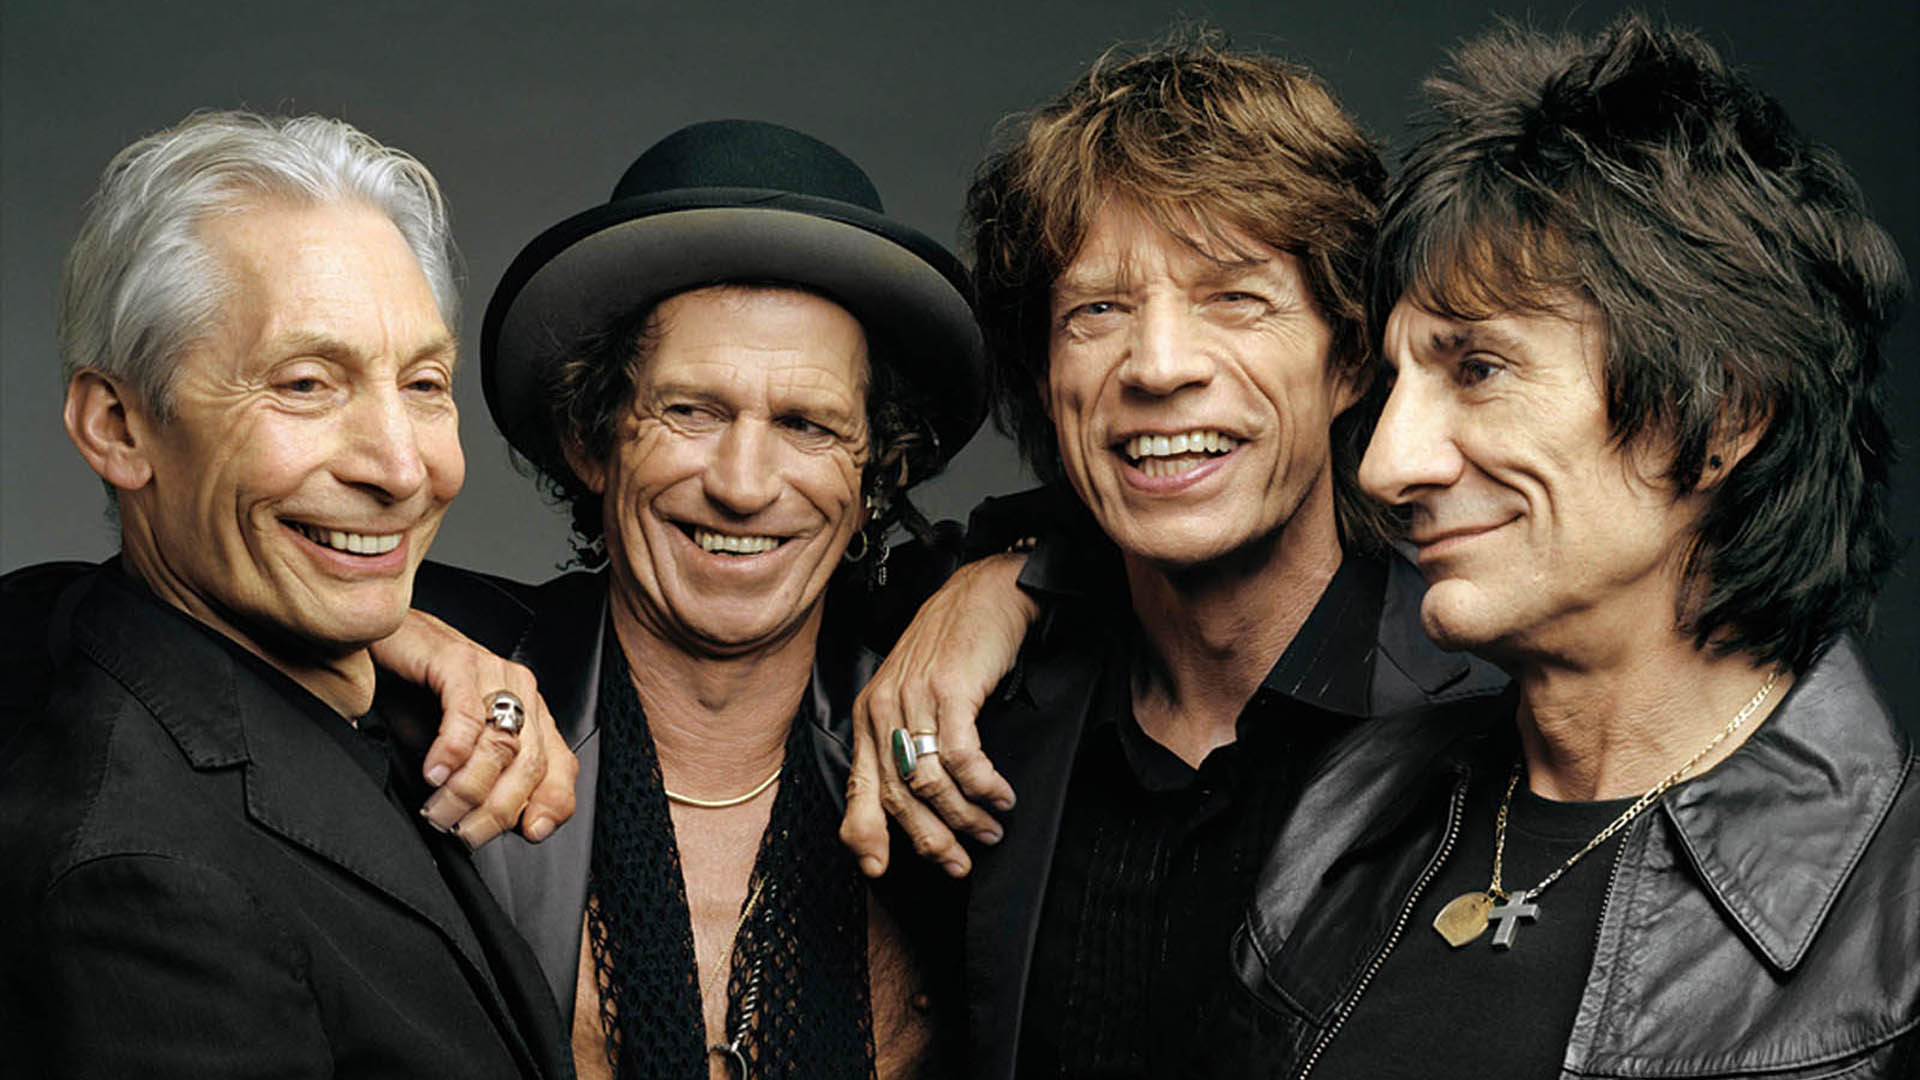 El nuevo disco de los Rolling Stones alcanzó el número 1 en Reino Unido en su primera semana